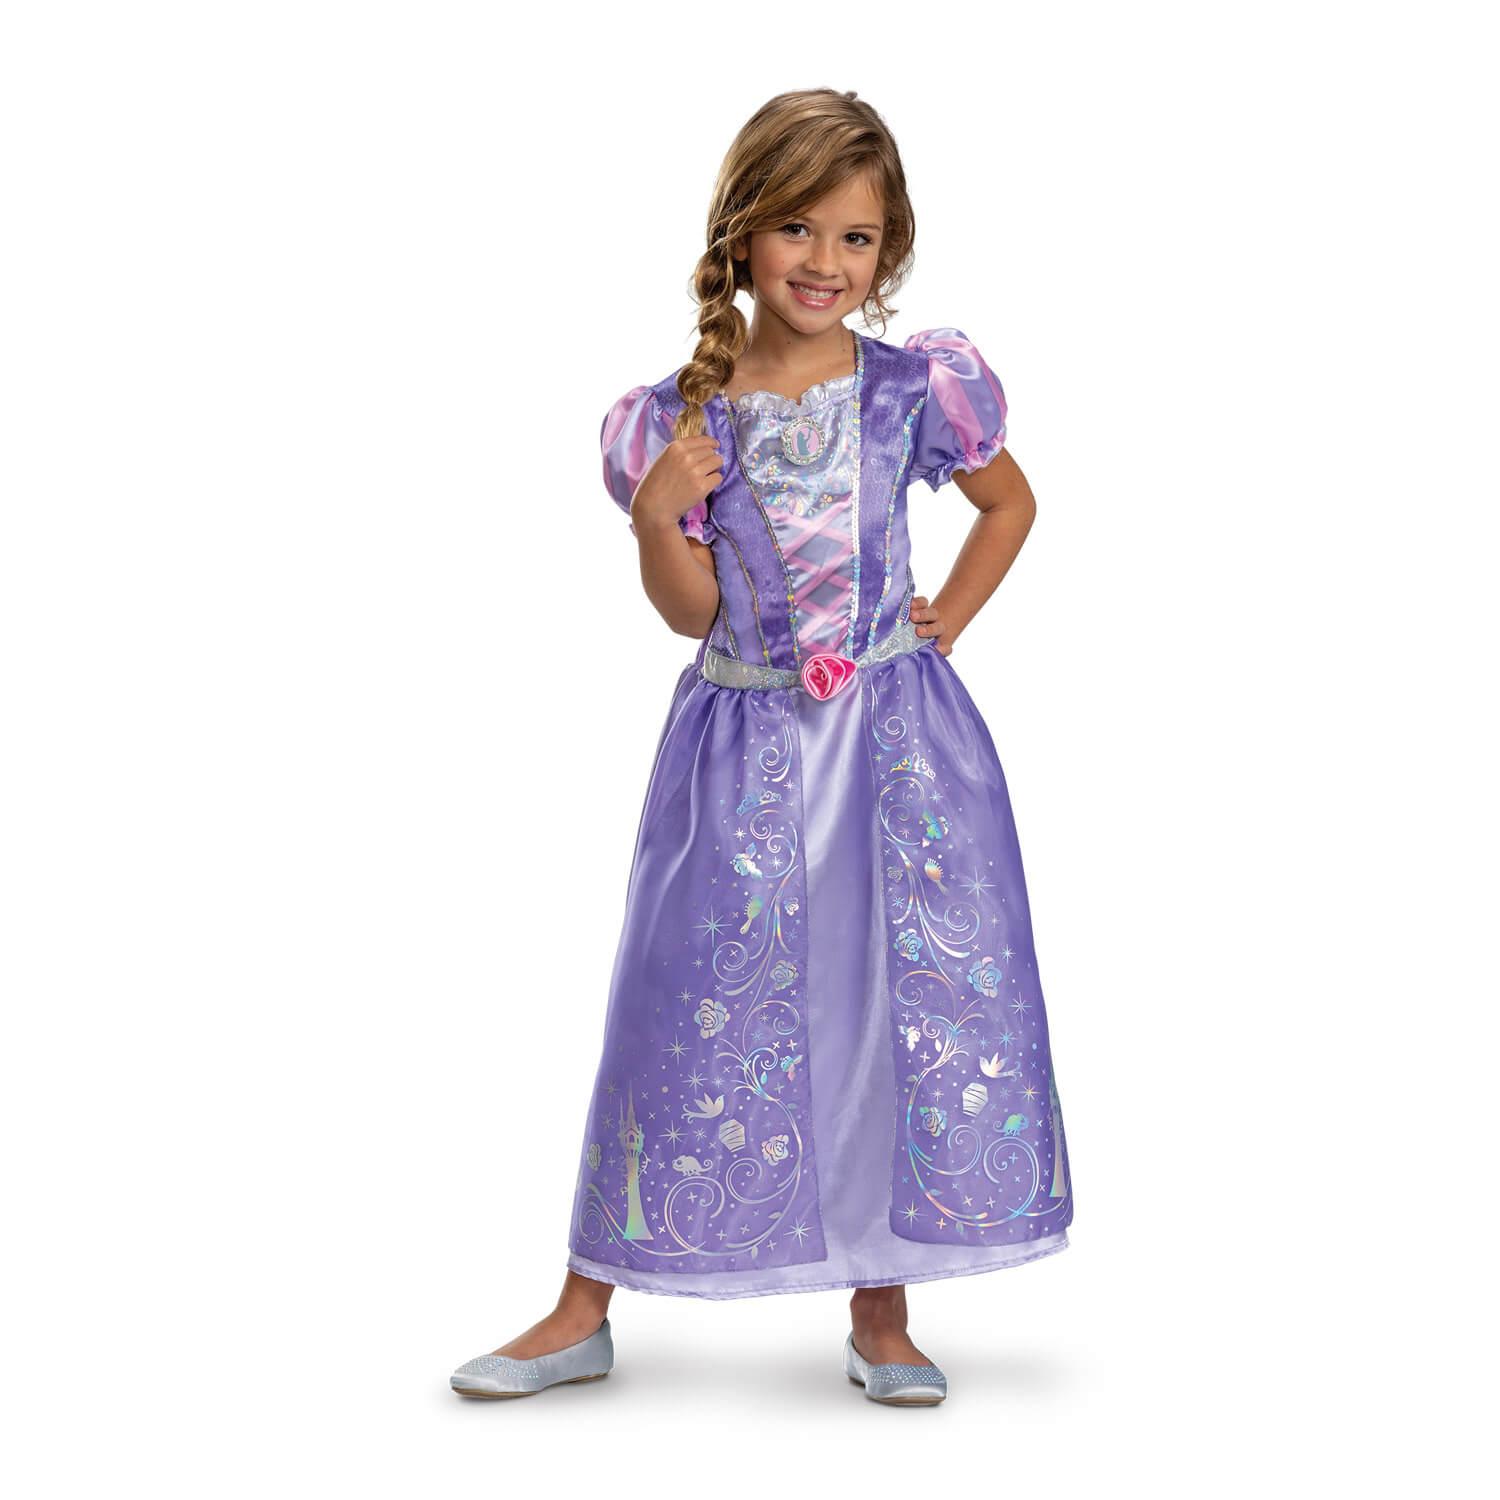 Déguisement princesse Belle adulte, la magie du déguisement - deguisements  dessin animé Disney